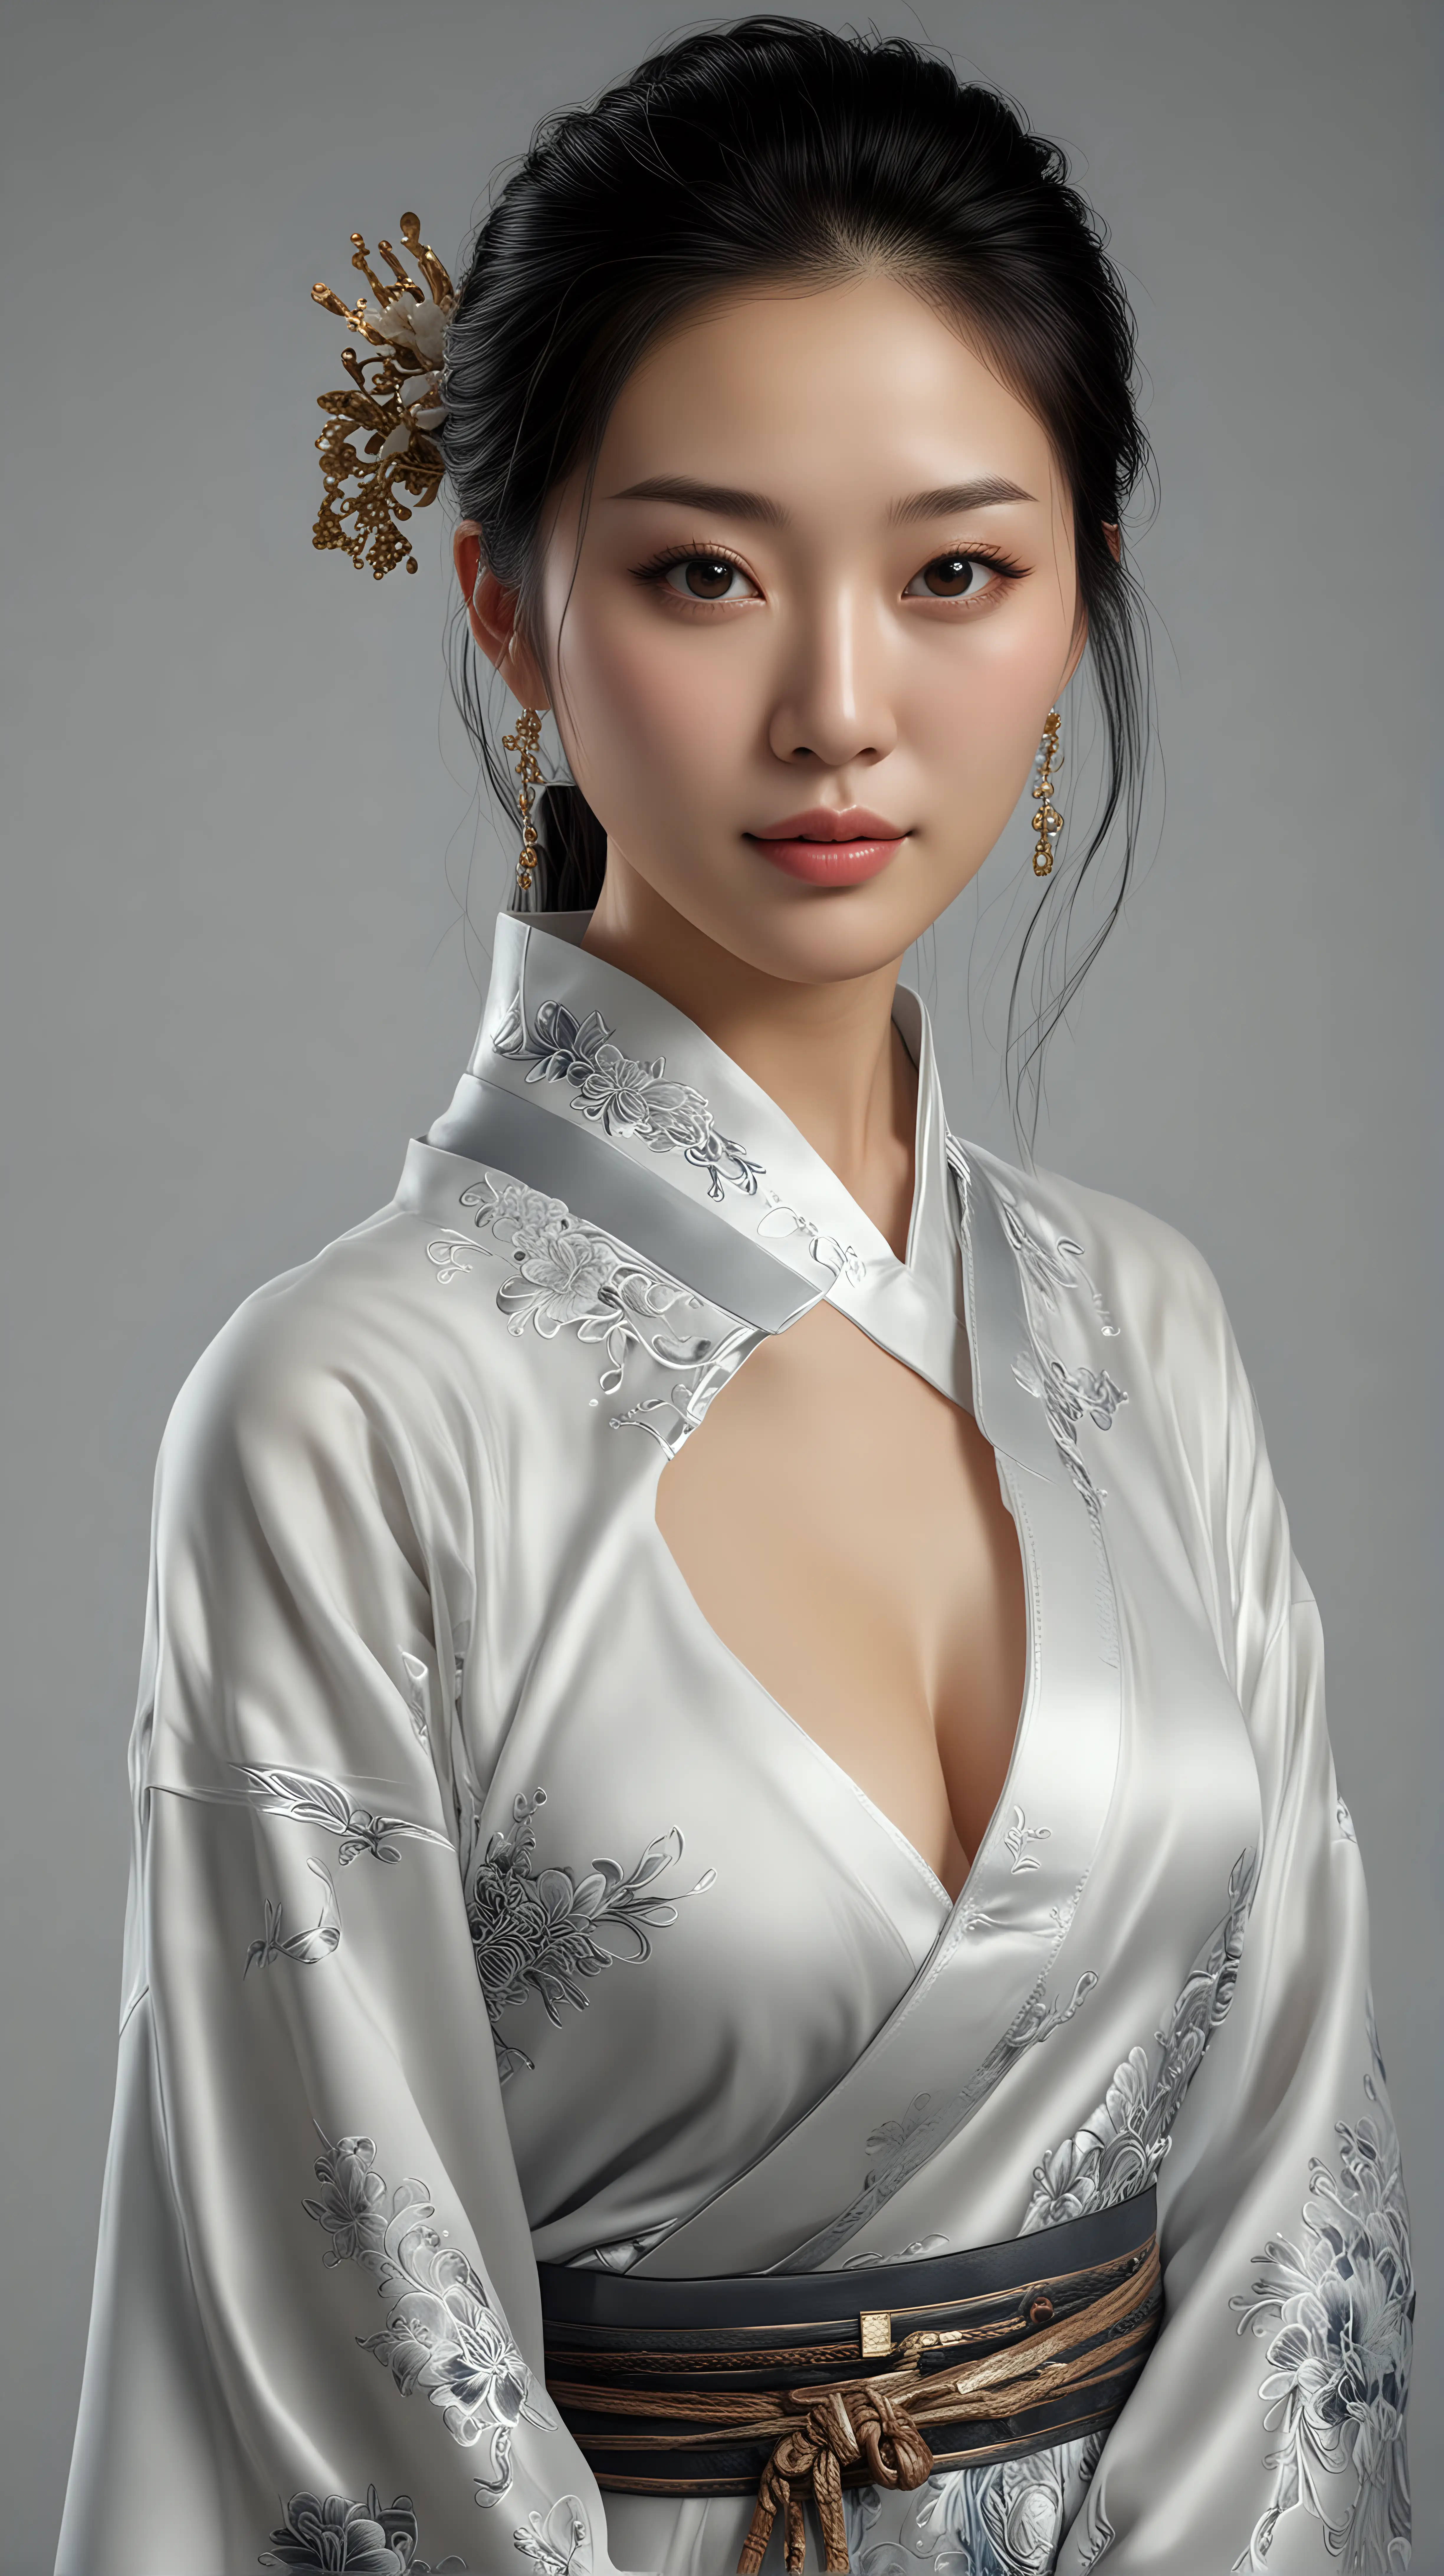 Chinese beautiful woman. hyper realistic